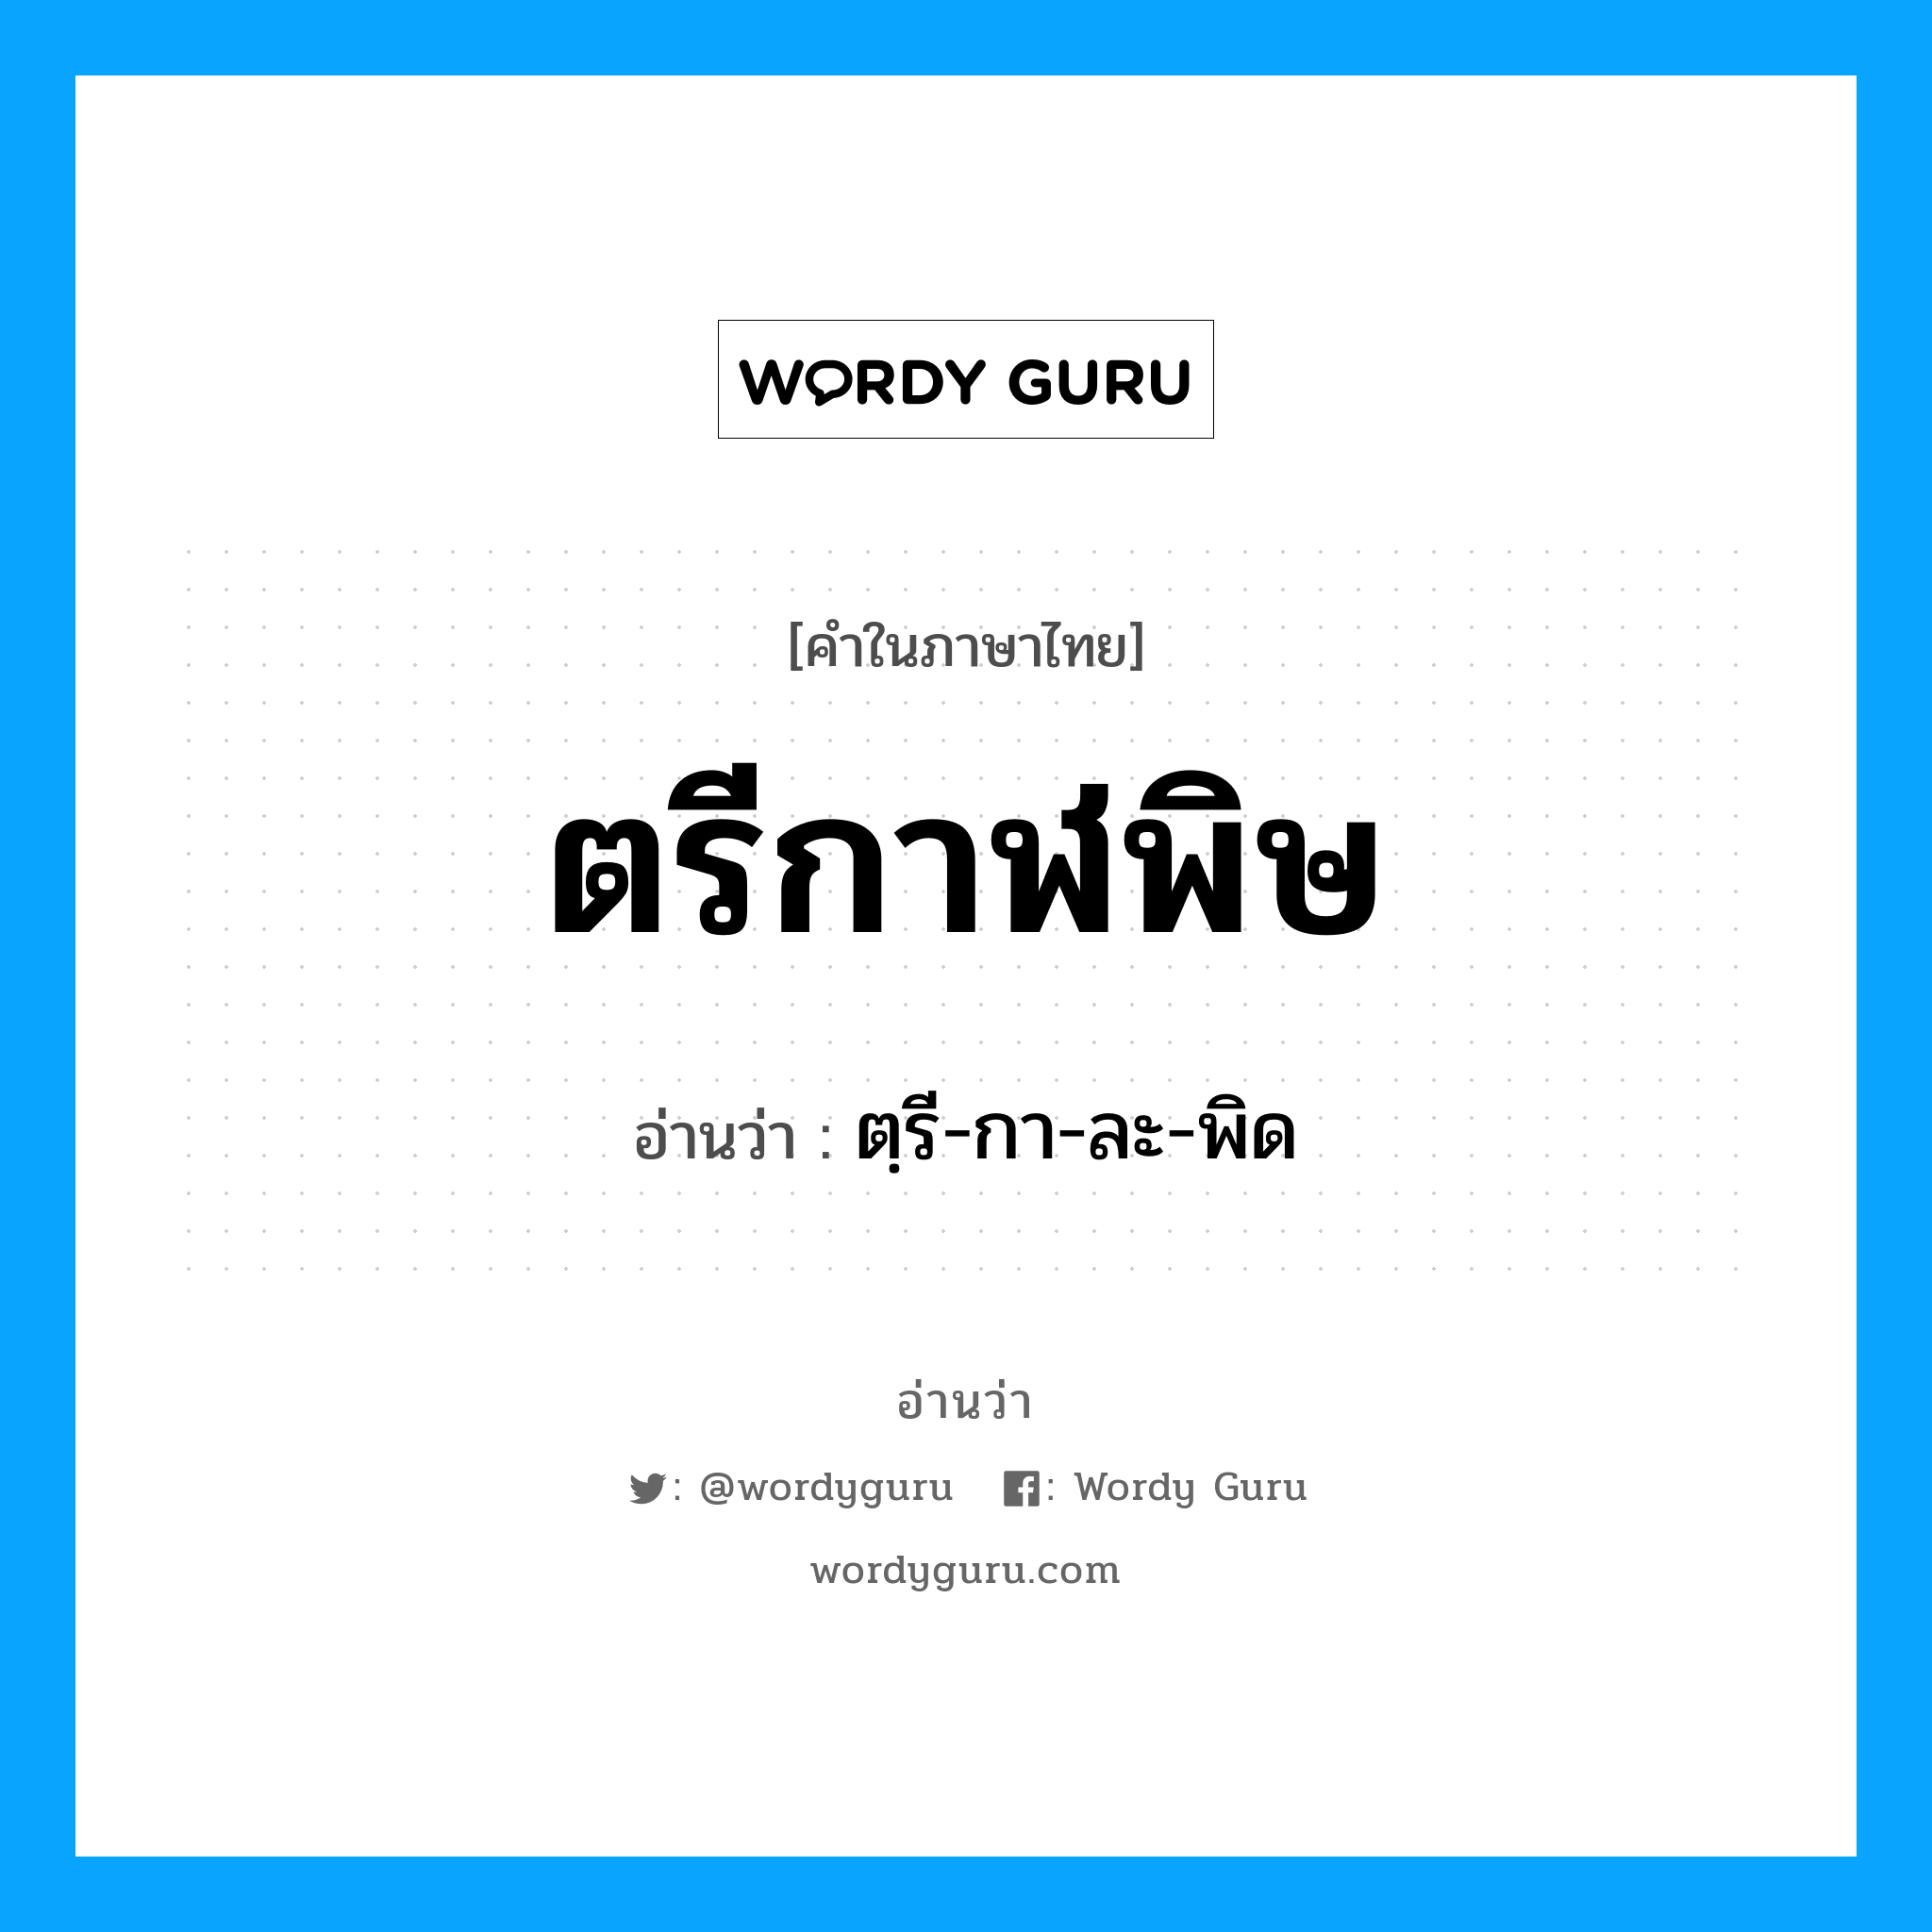 ตฺรี-กา-ละ-พิด เป็นคำอ่านของคำไหน?, คำในภาษาไทย ตฺรี-กา-ละ-พิด อ่านว่า ตรีกาฬพิษ